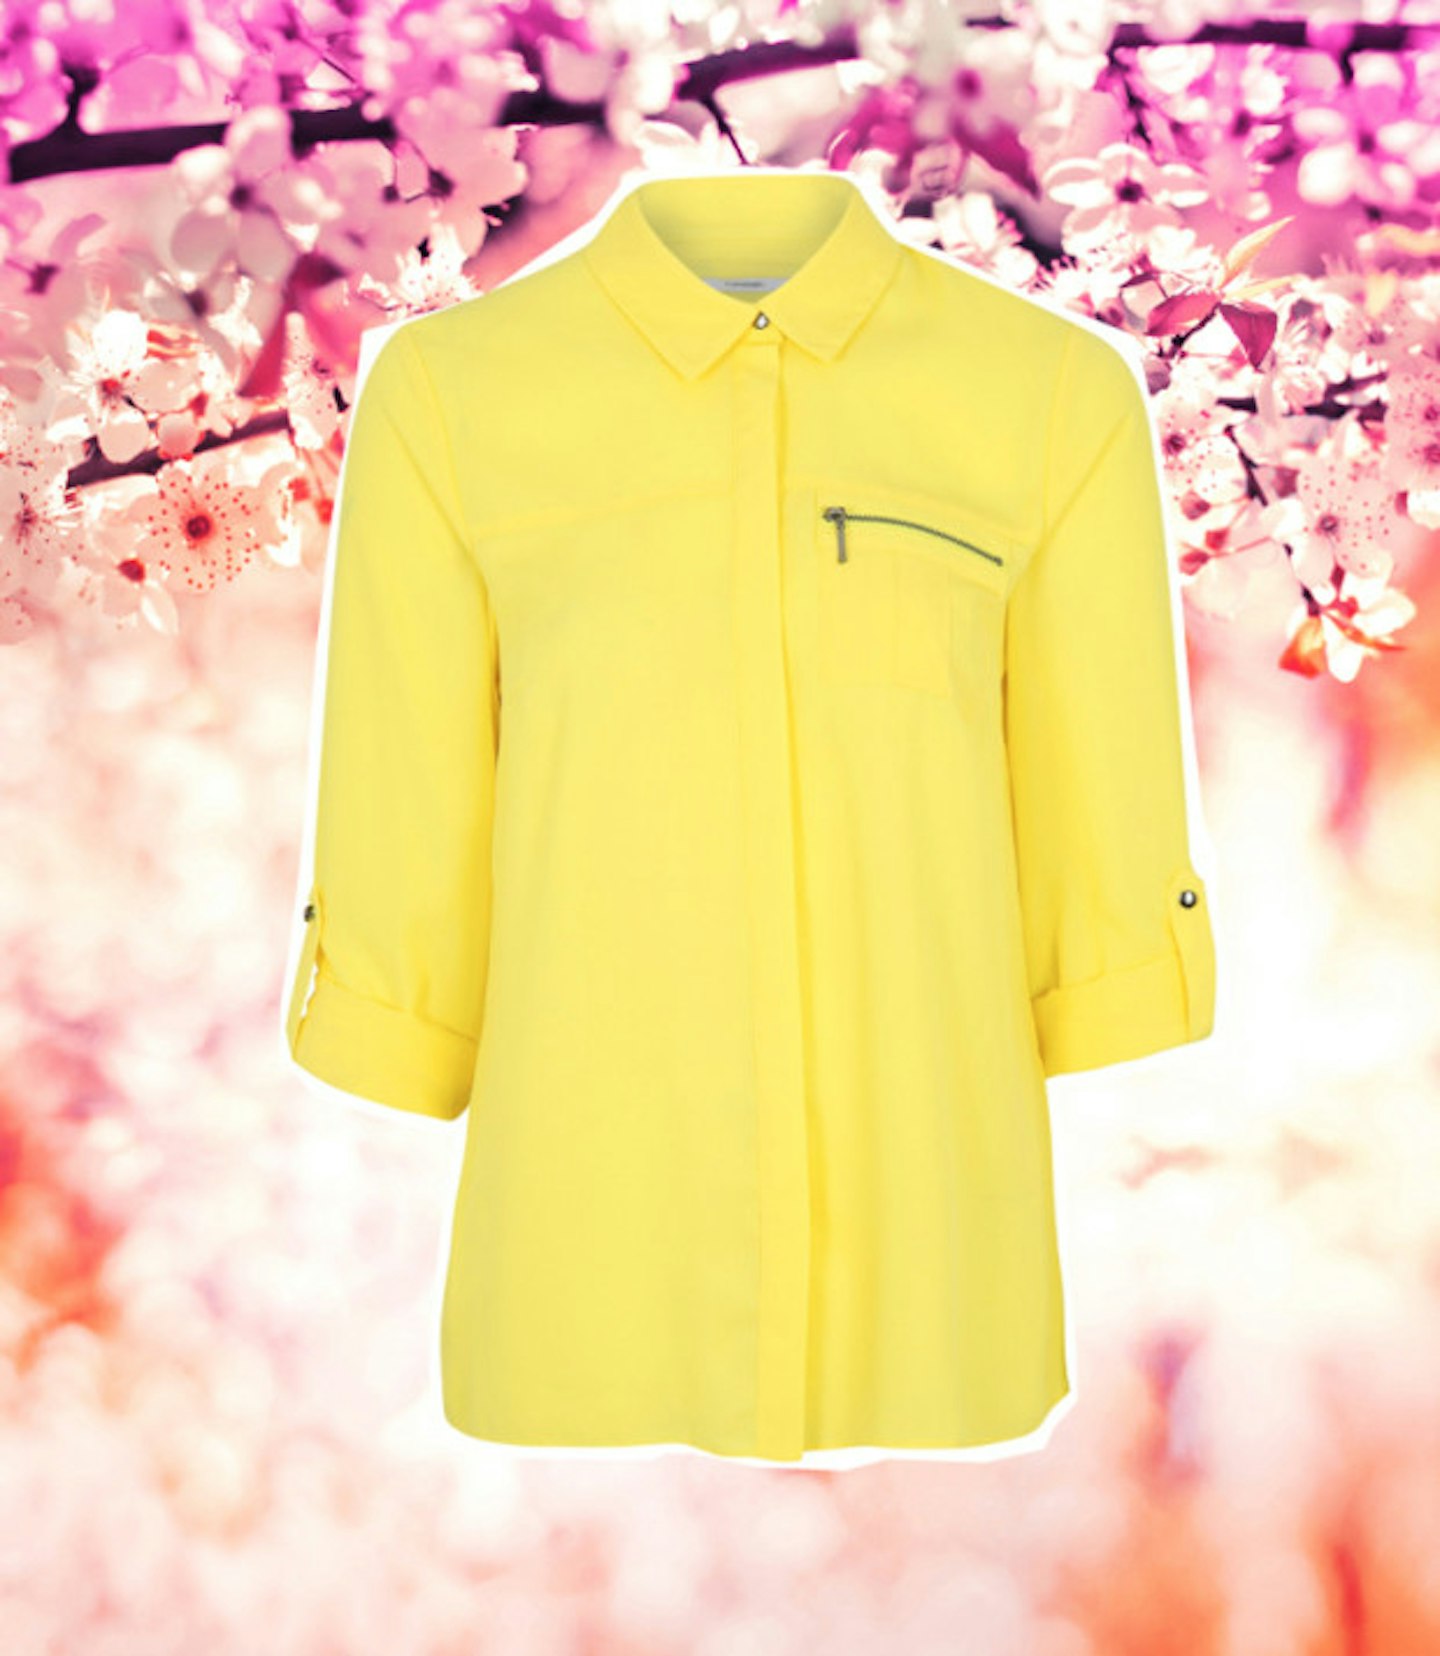 spring-buys-george-asda-yellow-shirt